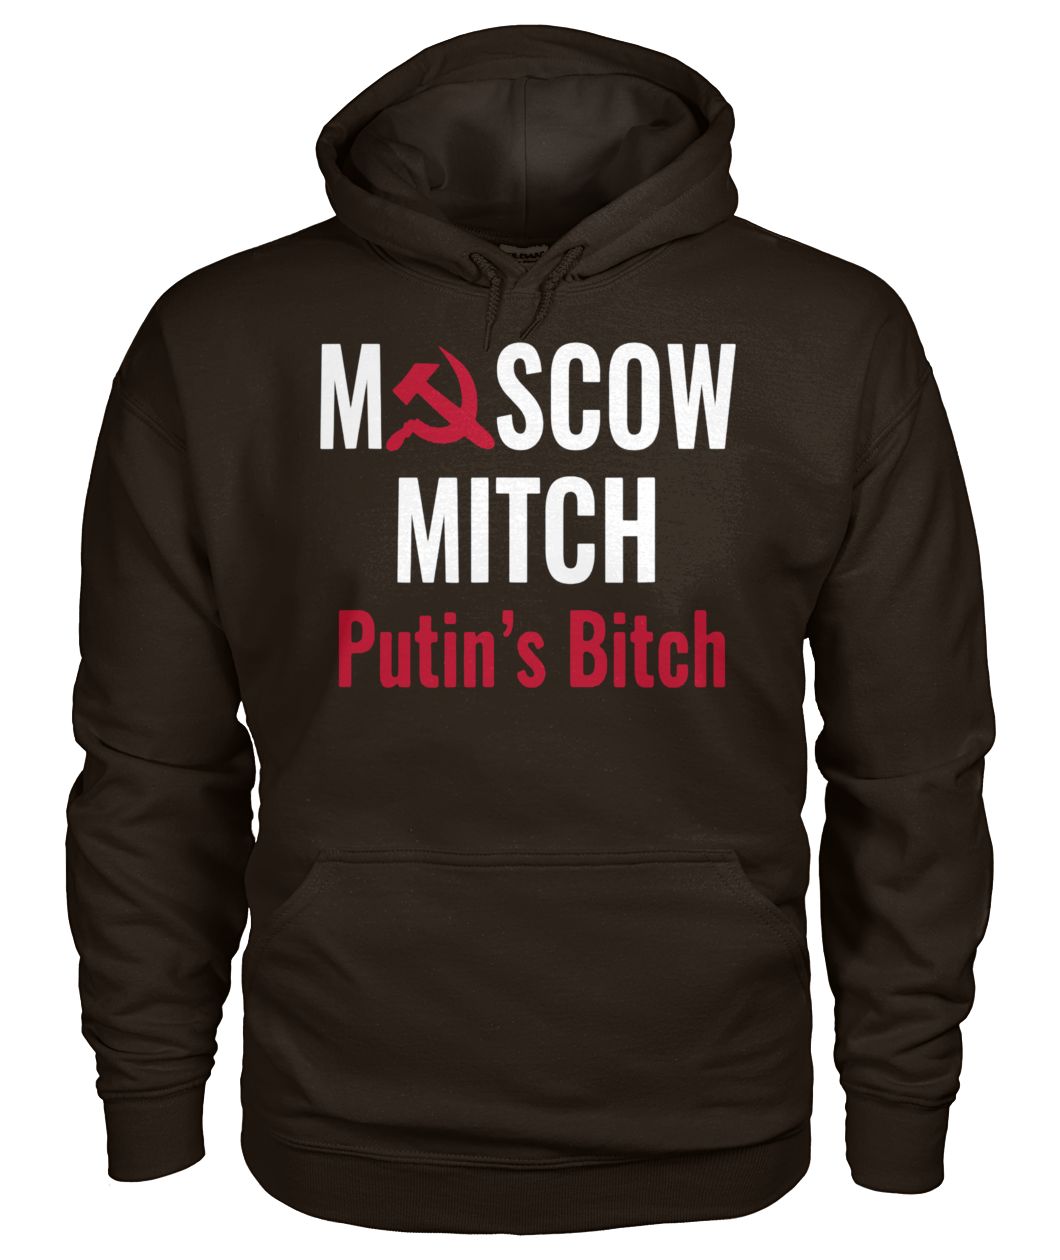 Moscow mitch putin's bitch gildan hoodie